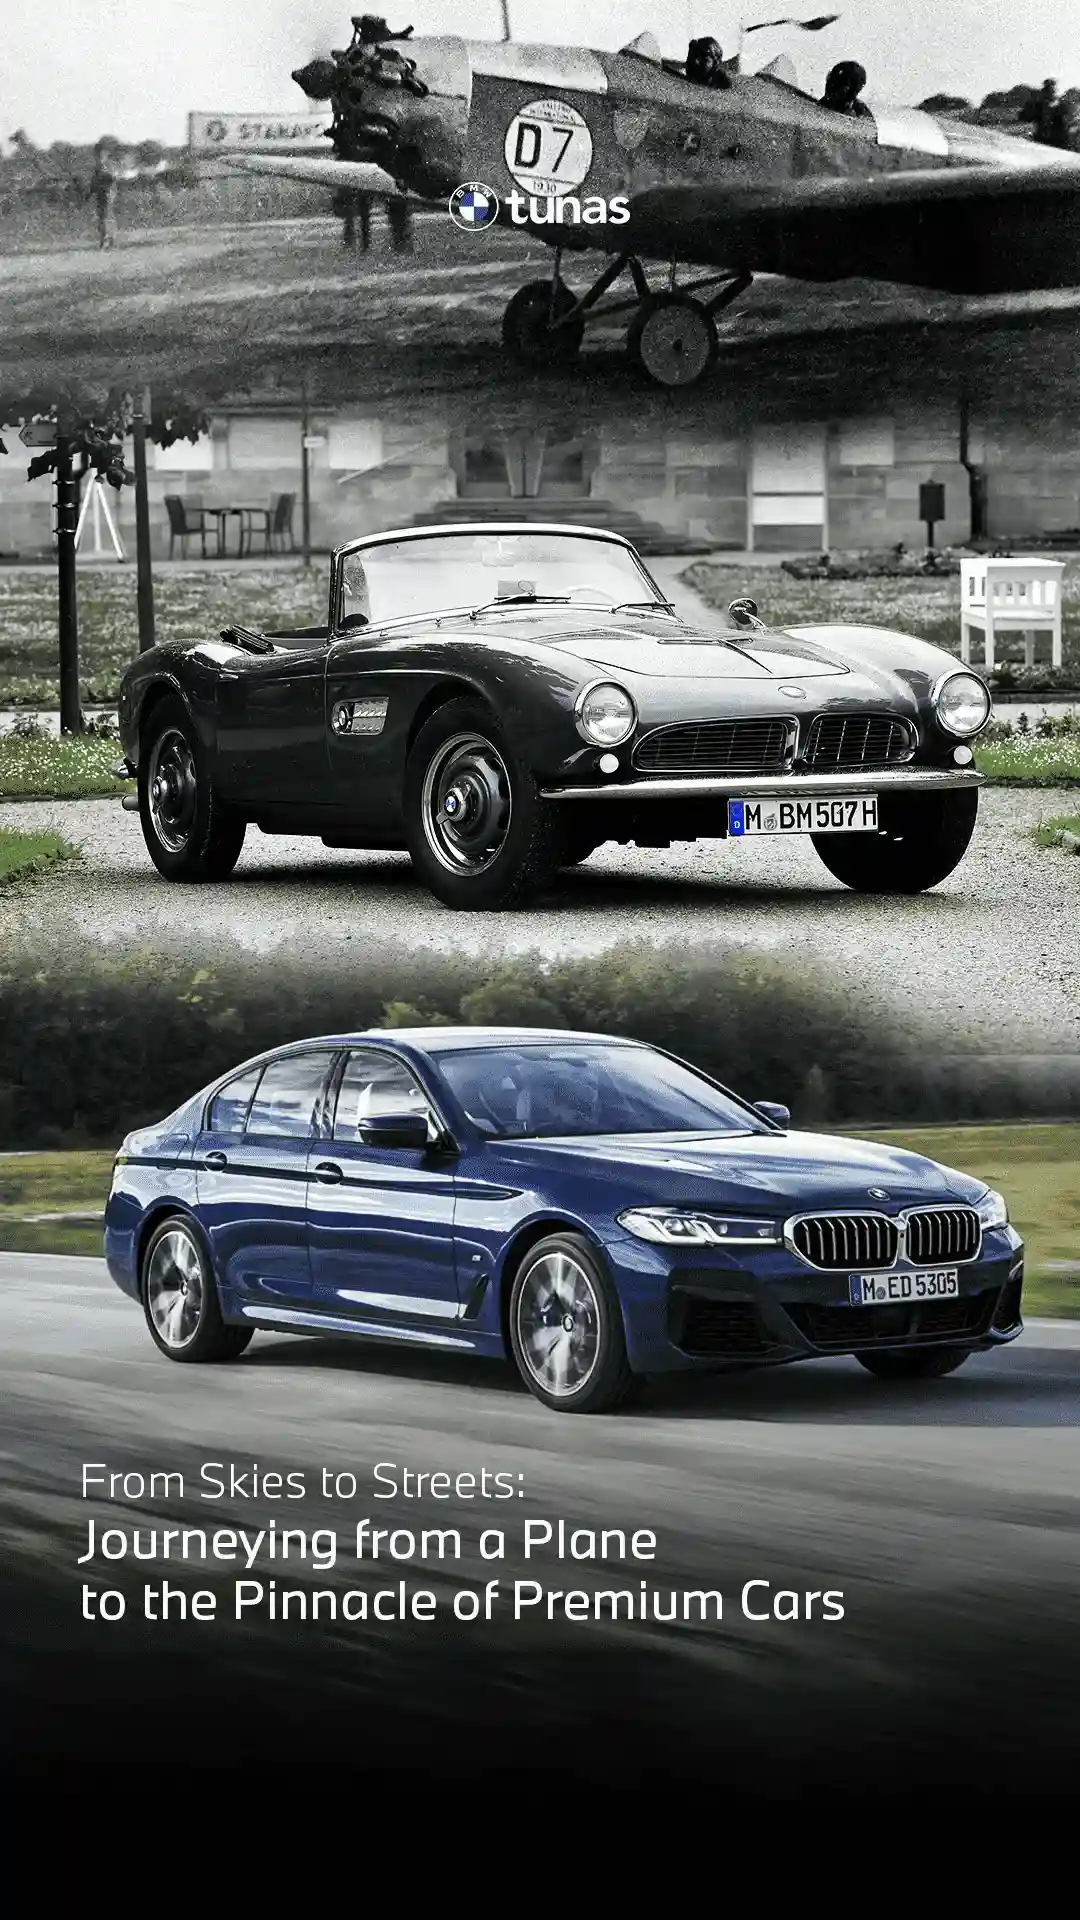 Sejarah BMW – Dulu Memproduksi Pesawat, Kini Mobil.